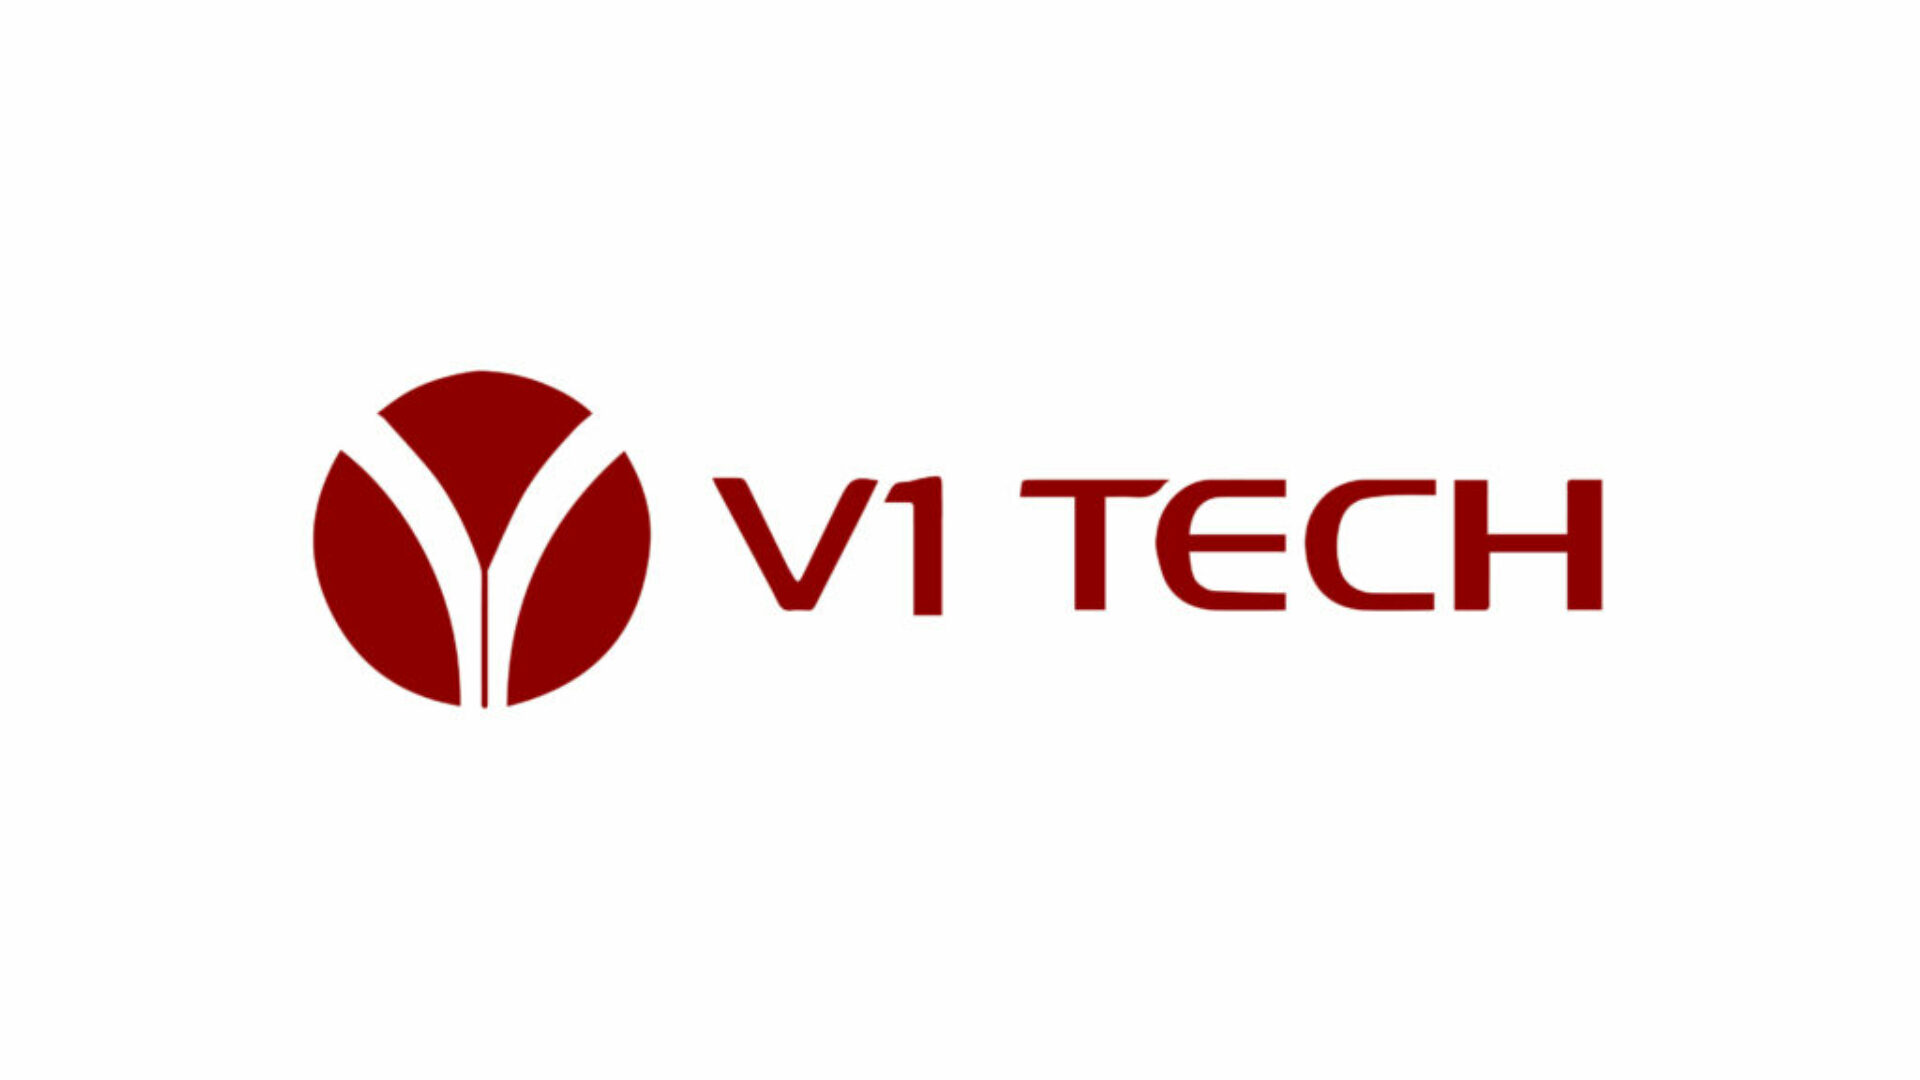 sponsor logo_v1tech